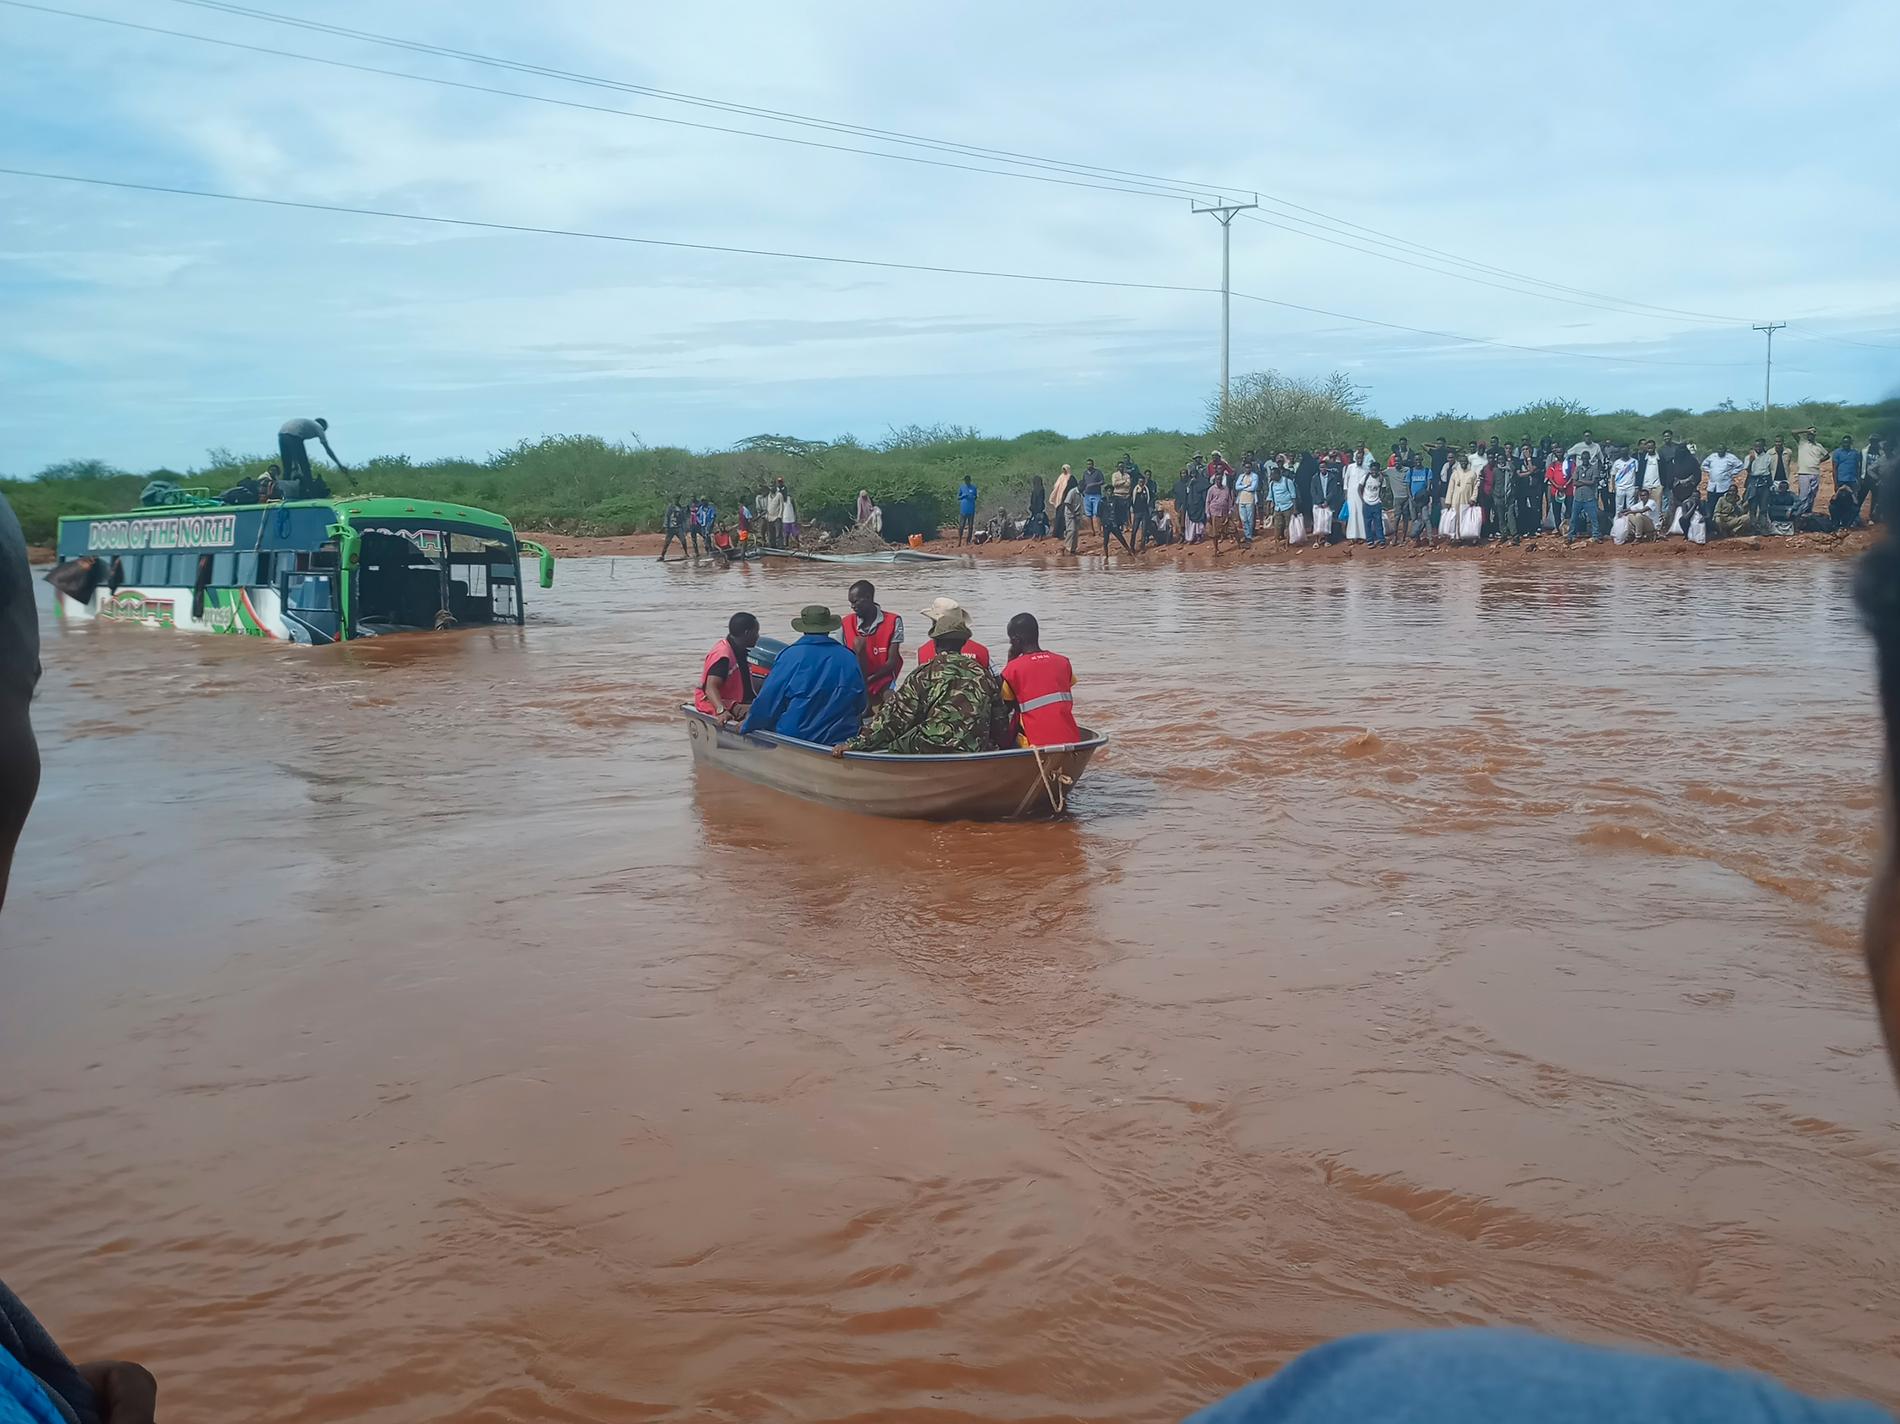 Passagerare från en buss som svepts iväg i översvämningar räddas med hjälp av båtar i norra Kenya tidigare i april.